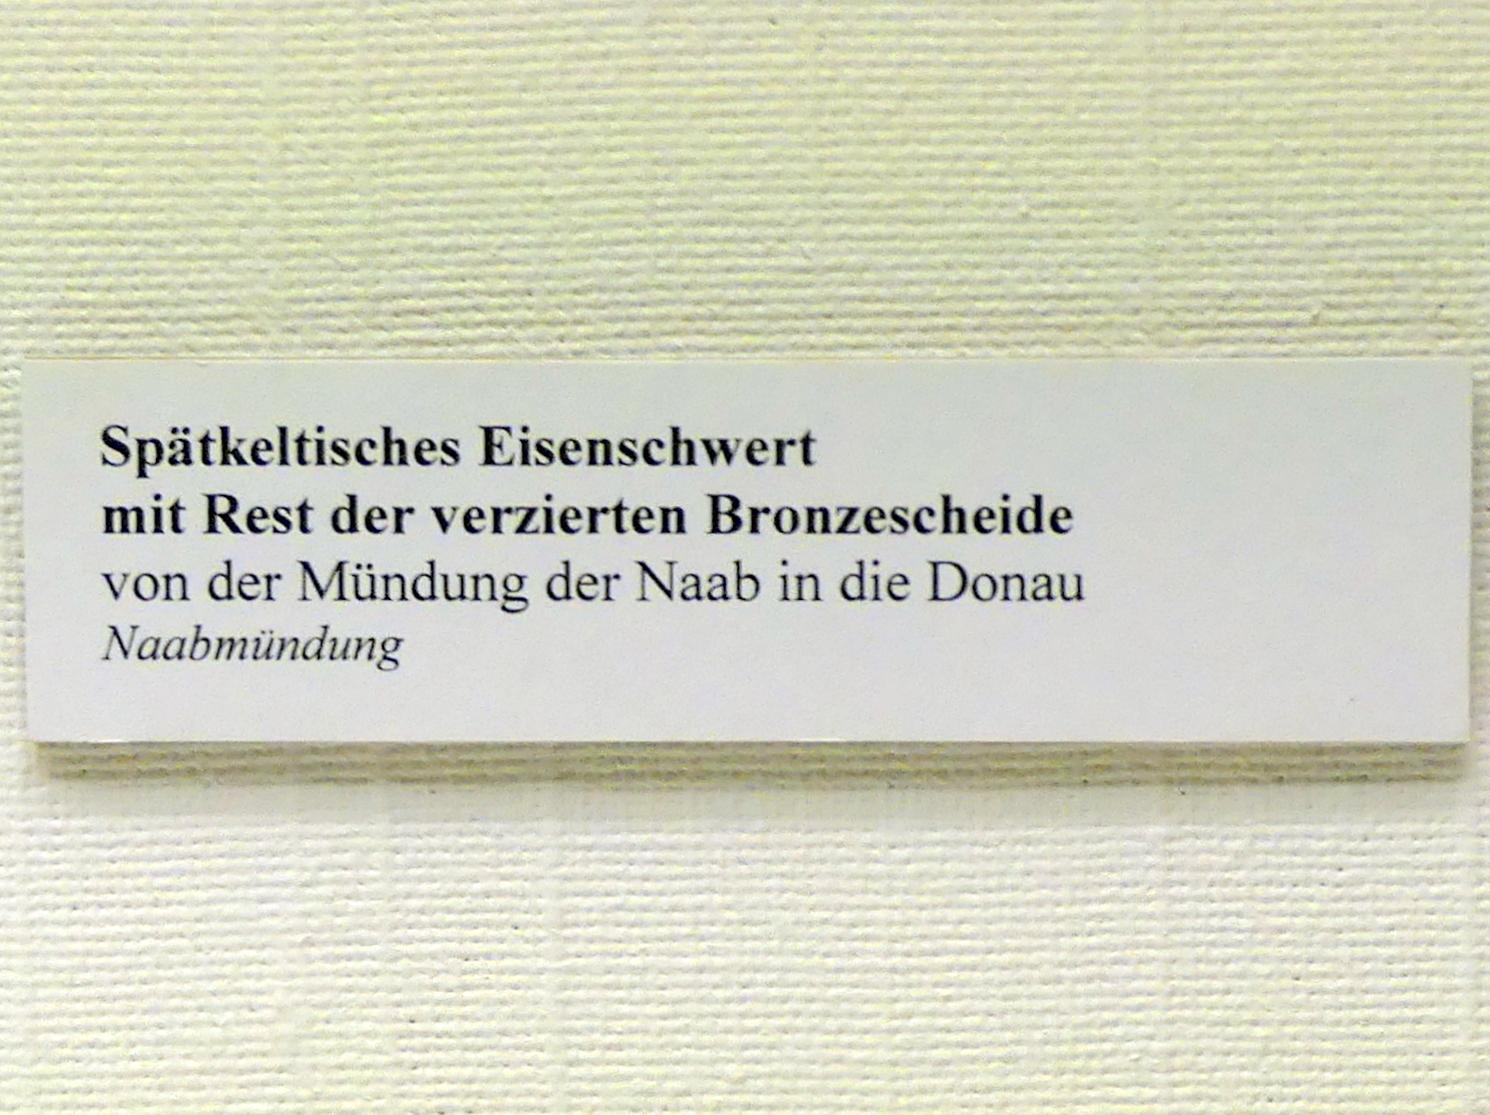 Spätkeltisches Eisenschwert und Rest der verzierten Bronzescheide, Spätlatènezeit D, 700 - 100 v. Chr., Bild 2/2